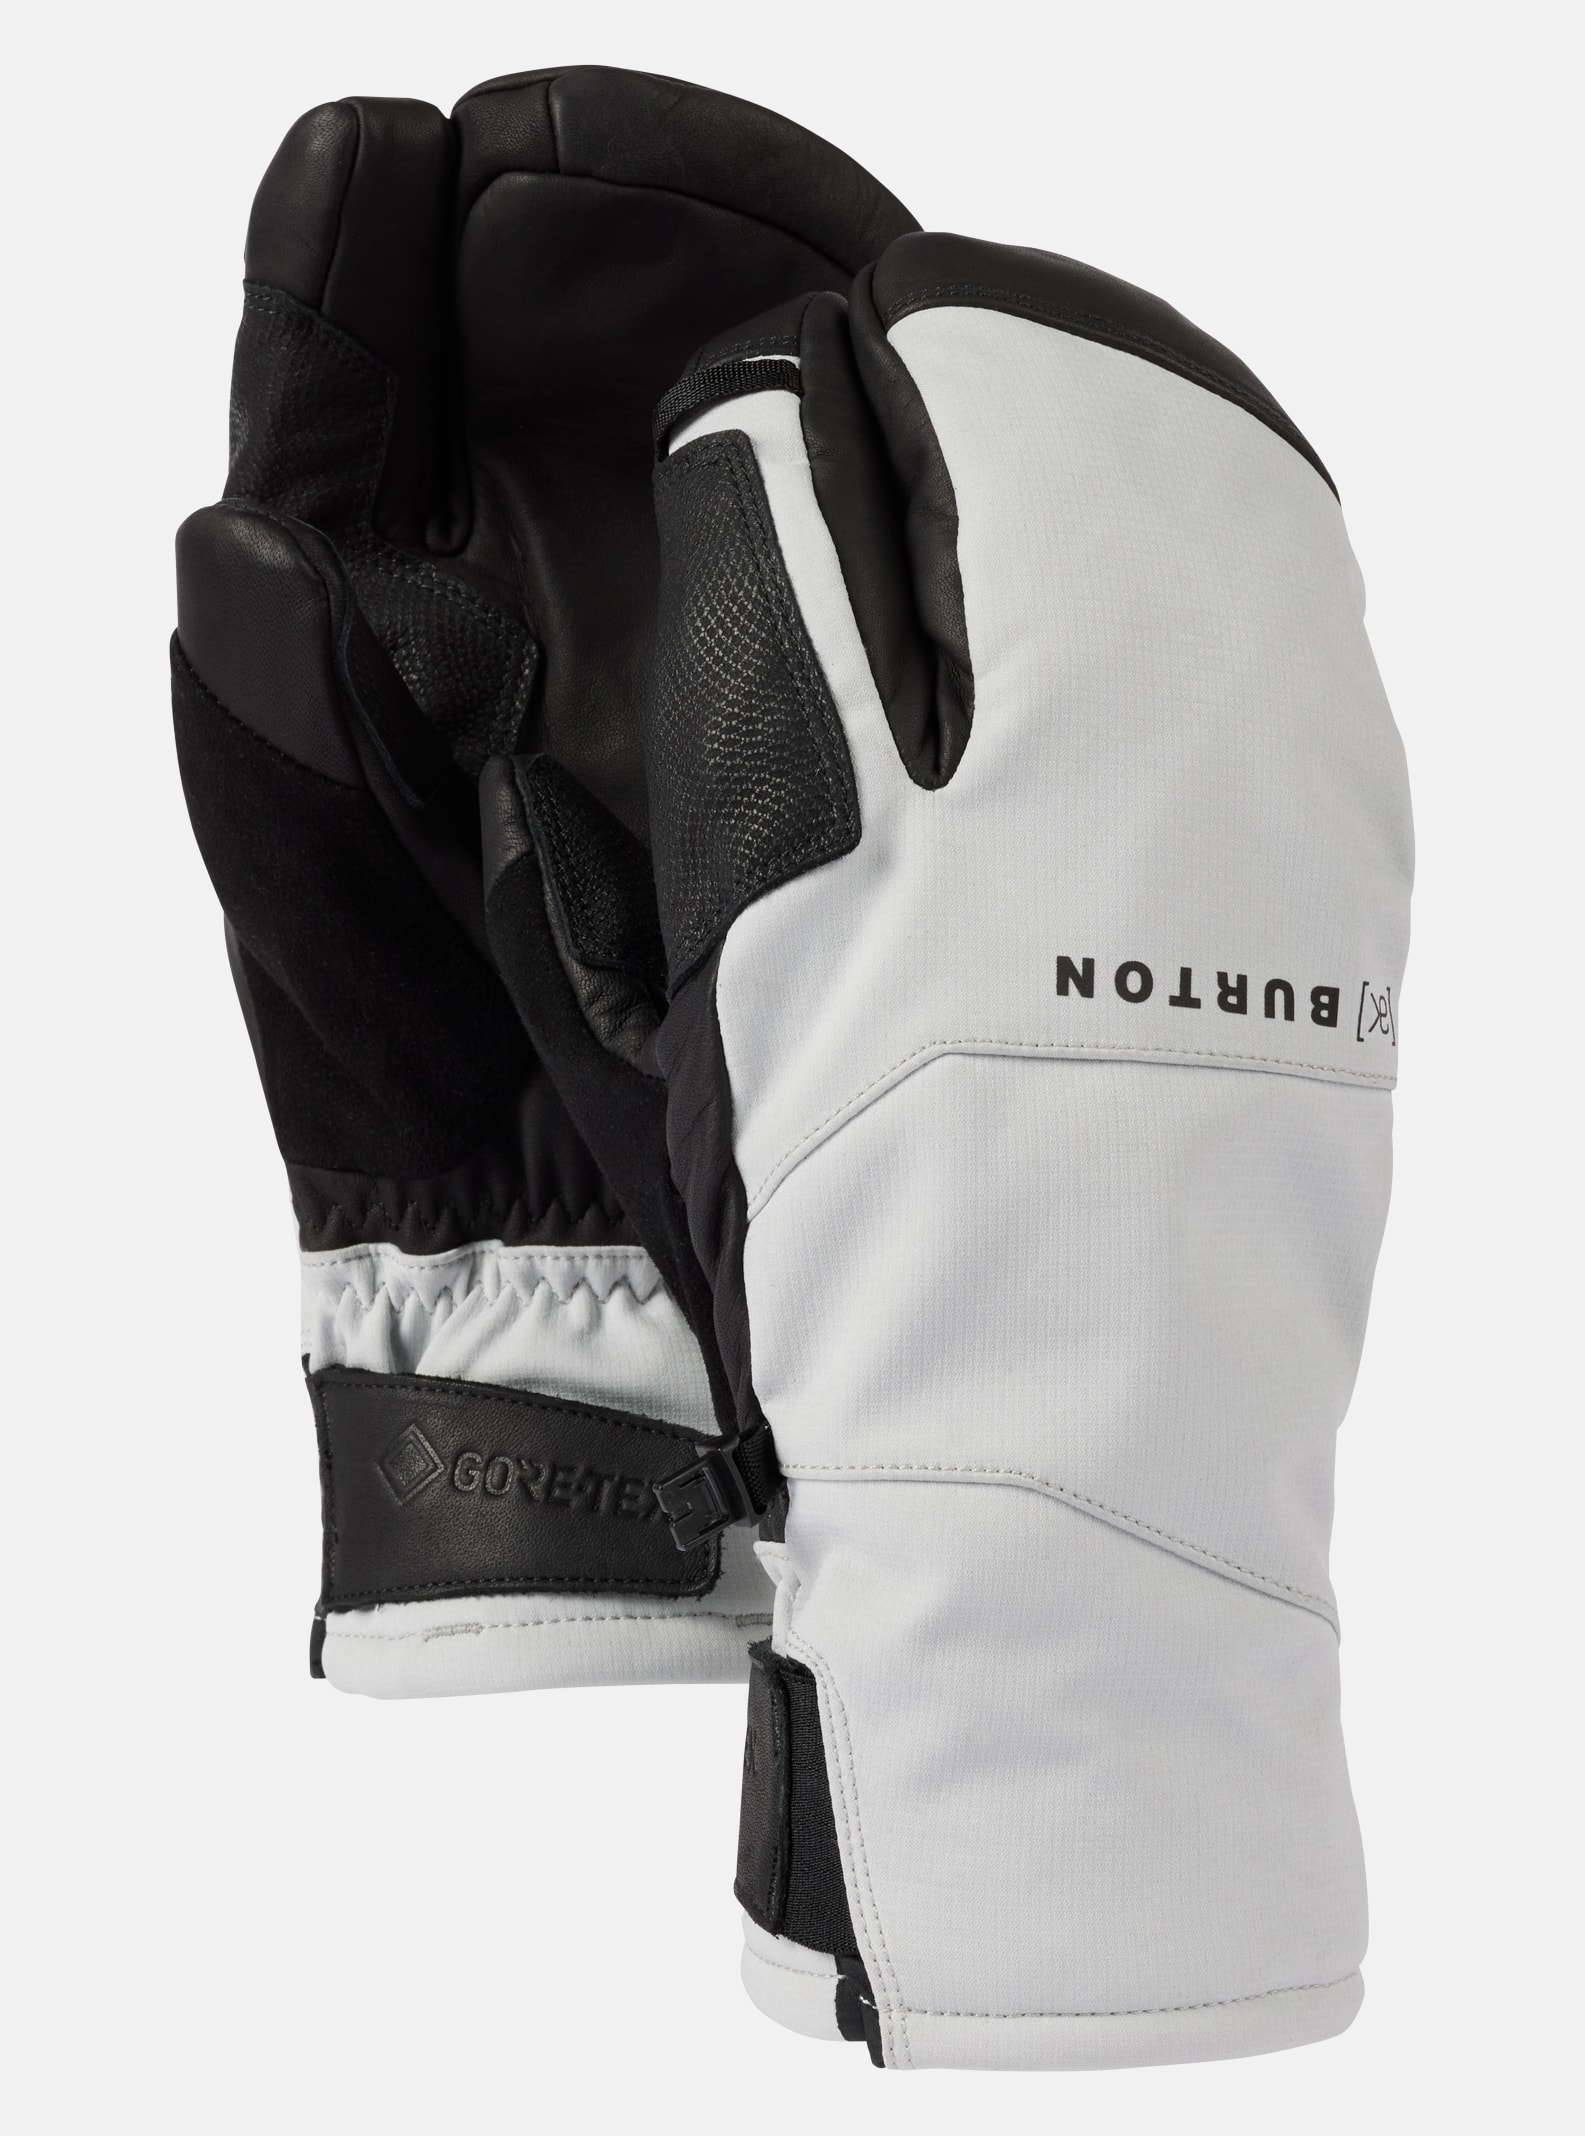 Men's Gloves & Mittens | Burton Snowboards CA